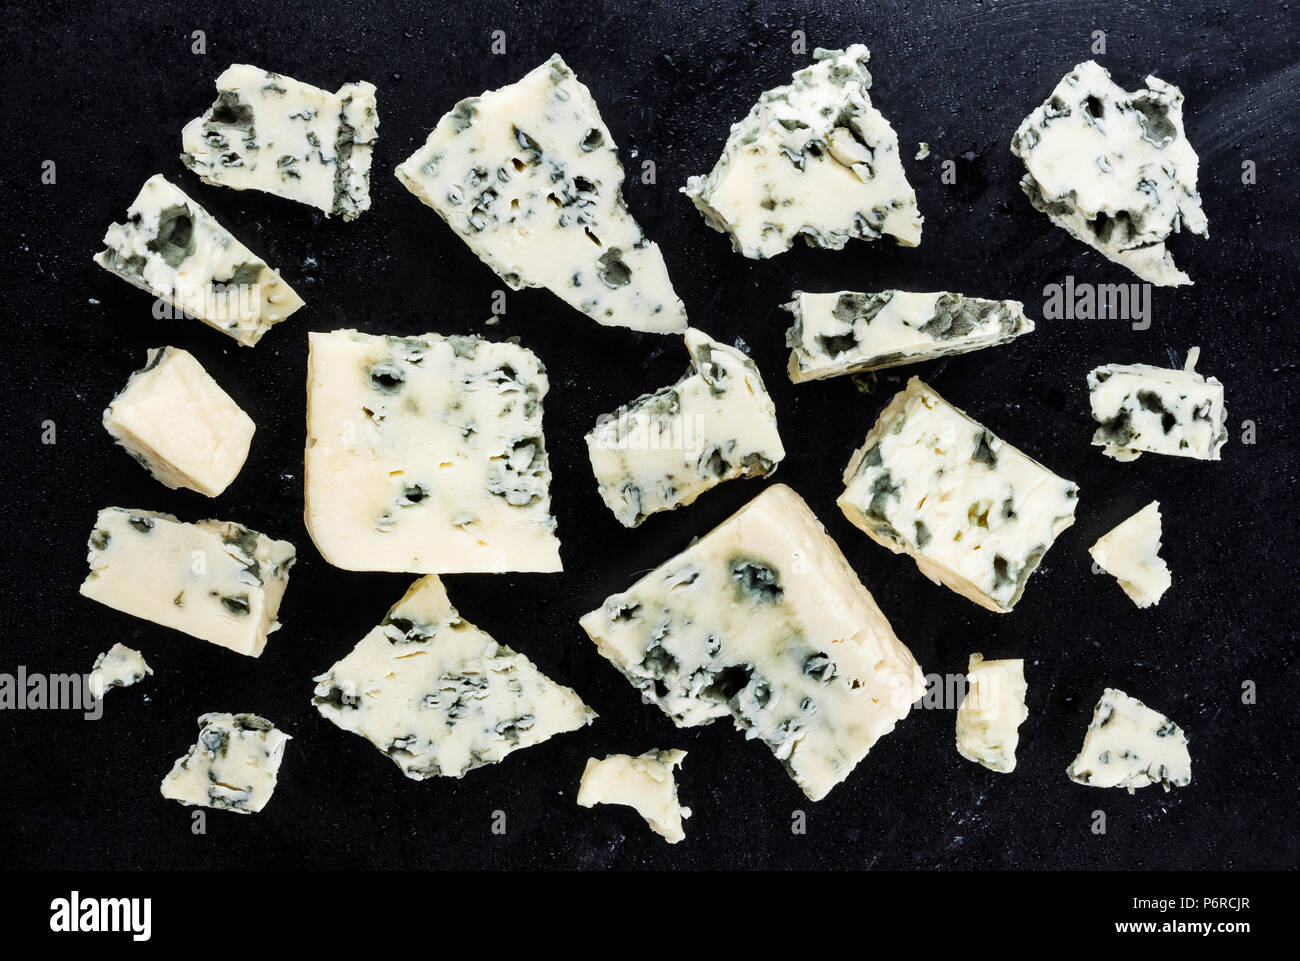 Danish blue cheese on dark background. Top view Stock Photo